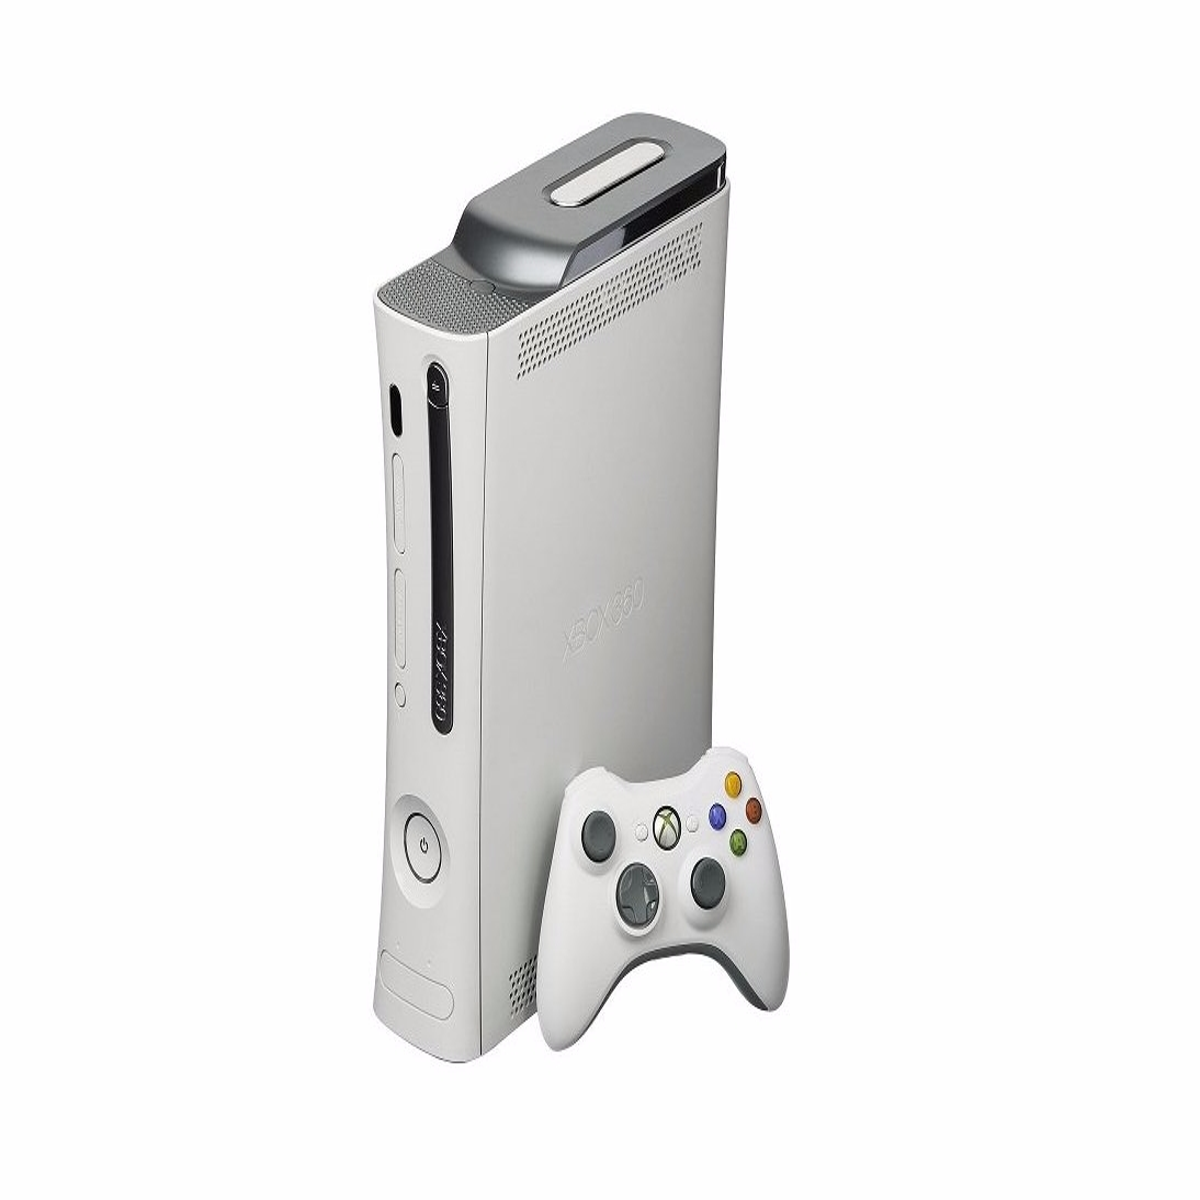 Relembre a história do Xbox 360, o maior sucesso da Microsoft nos consoles  - Games - Campo Grande News